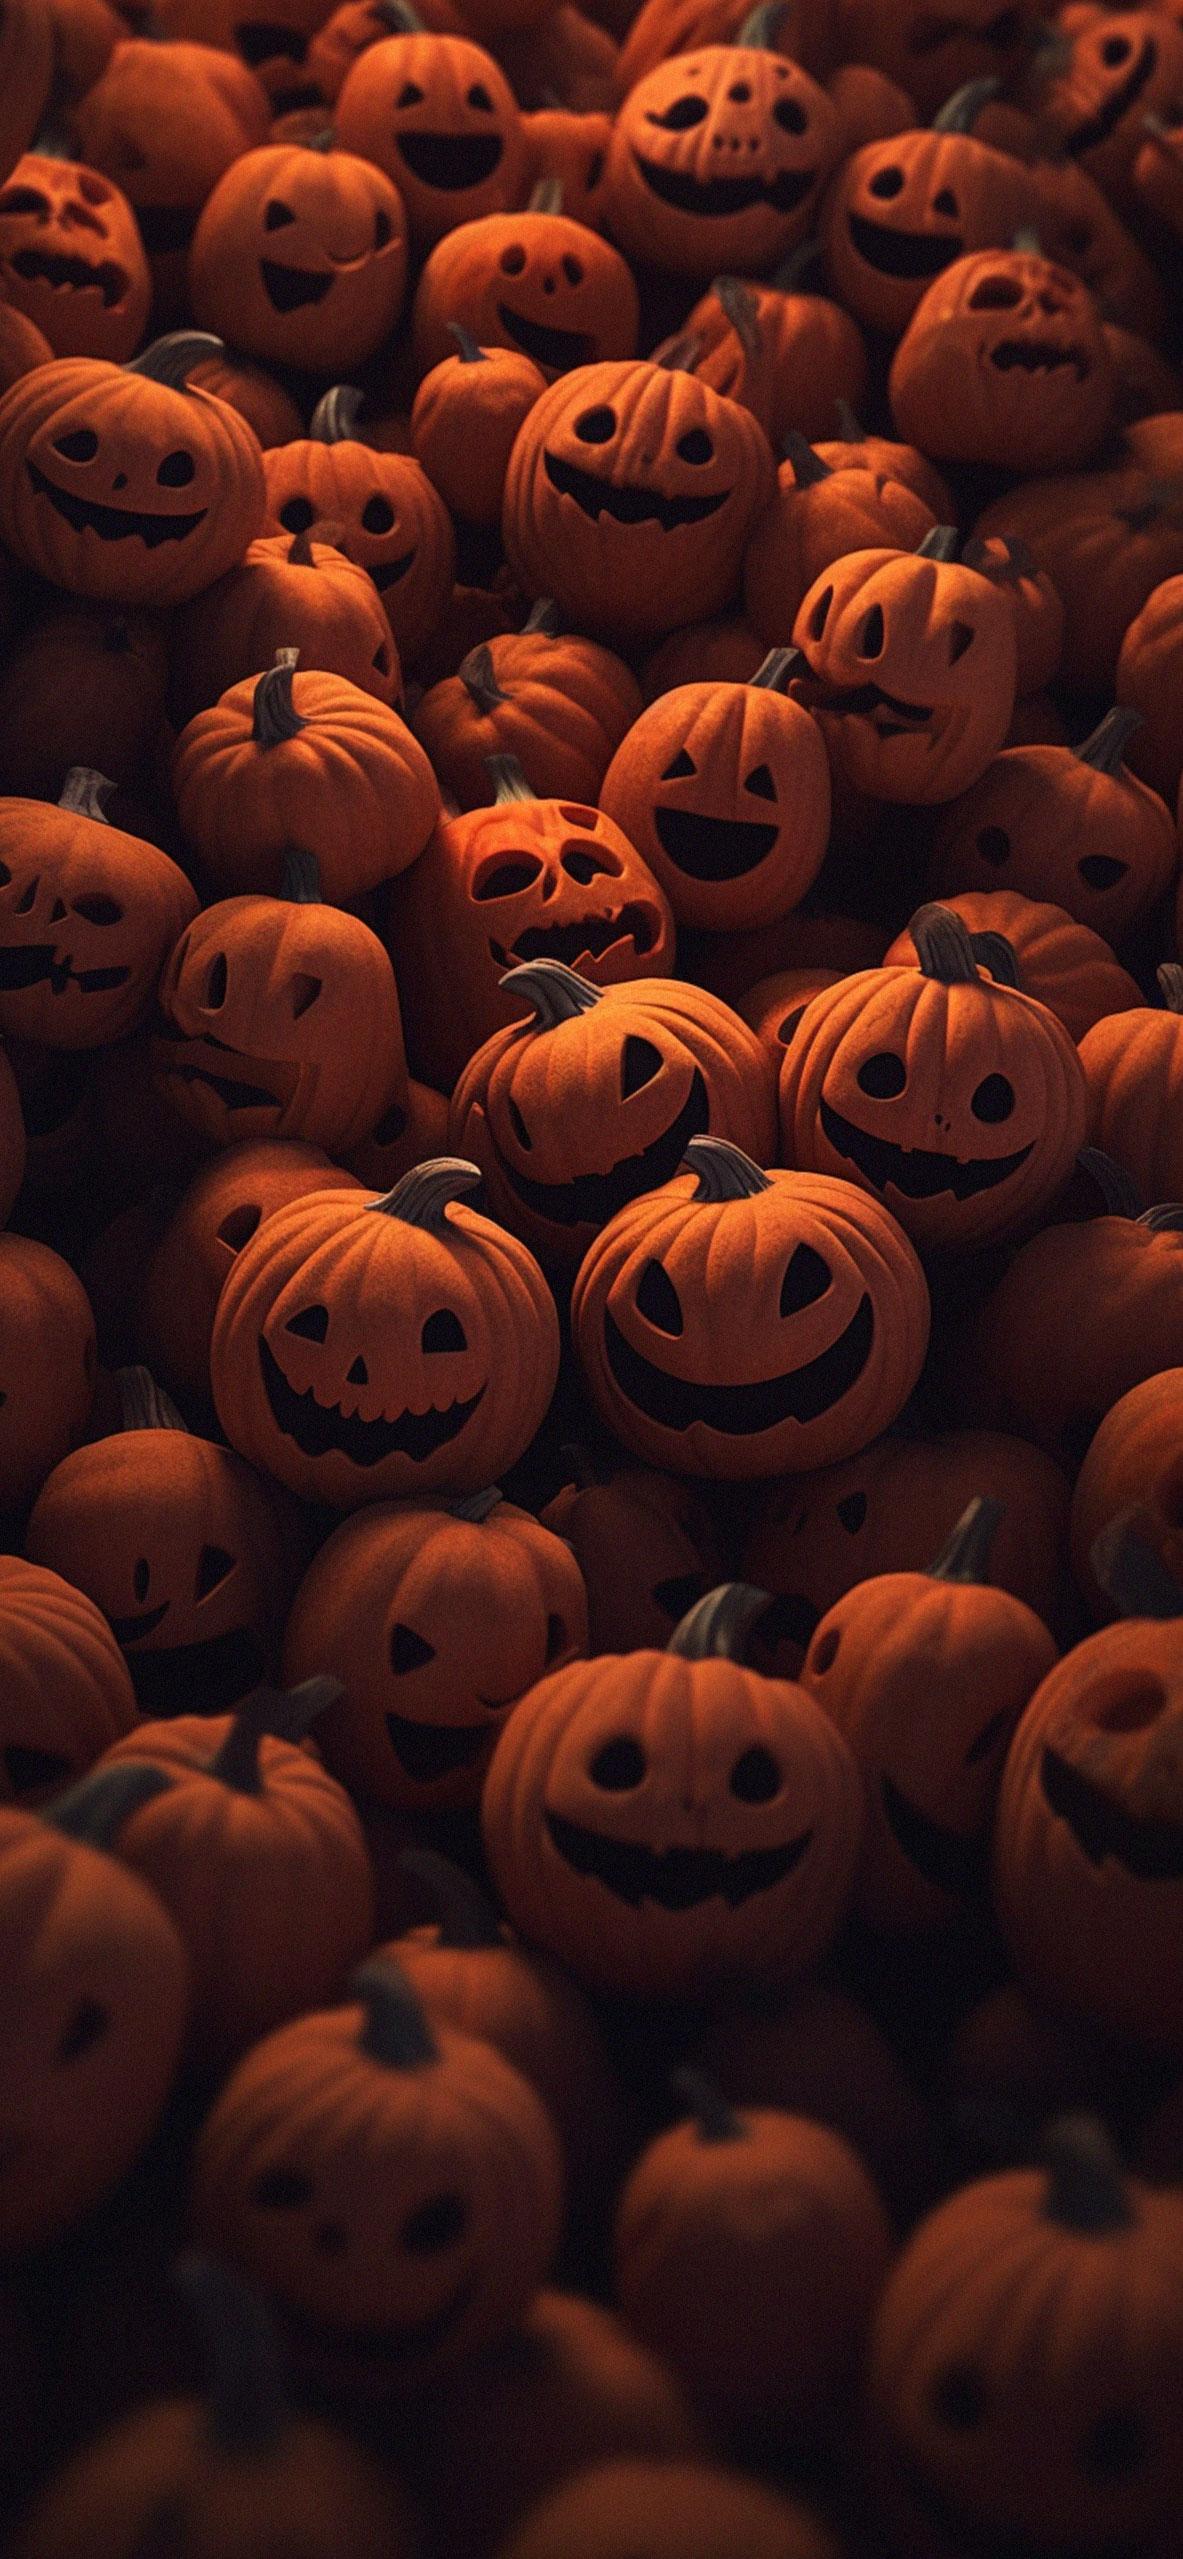 🔥 Download Funny Halloween Wallpaper Pumpkin by @cmiranda93 | Halloween ...